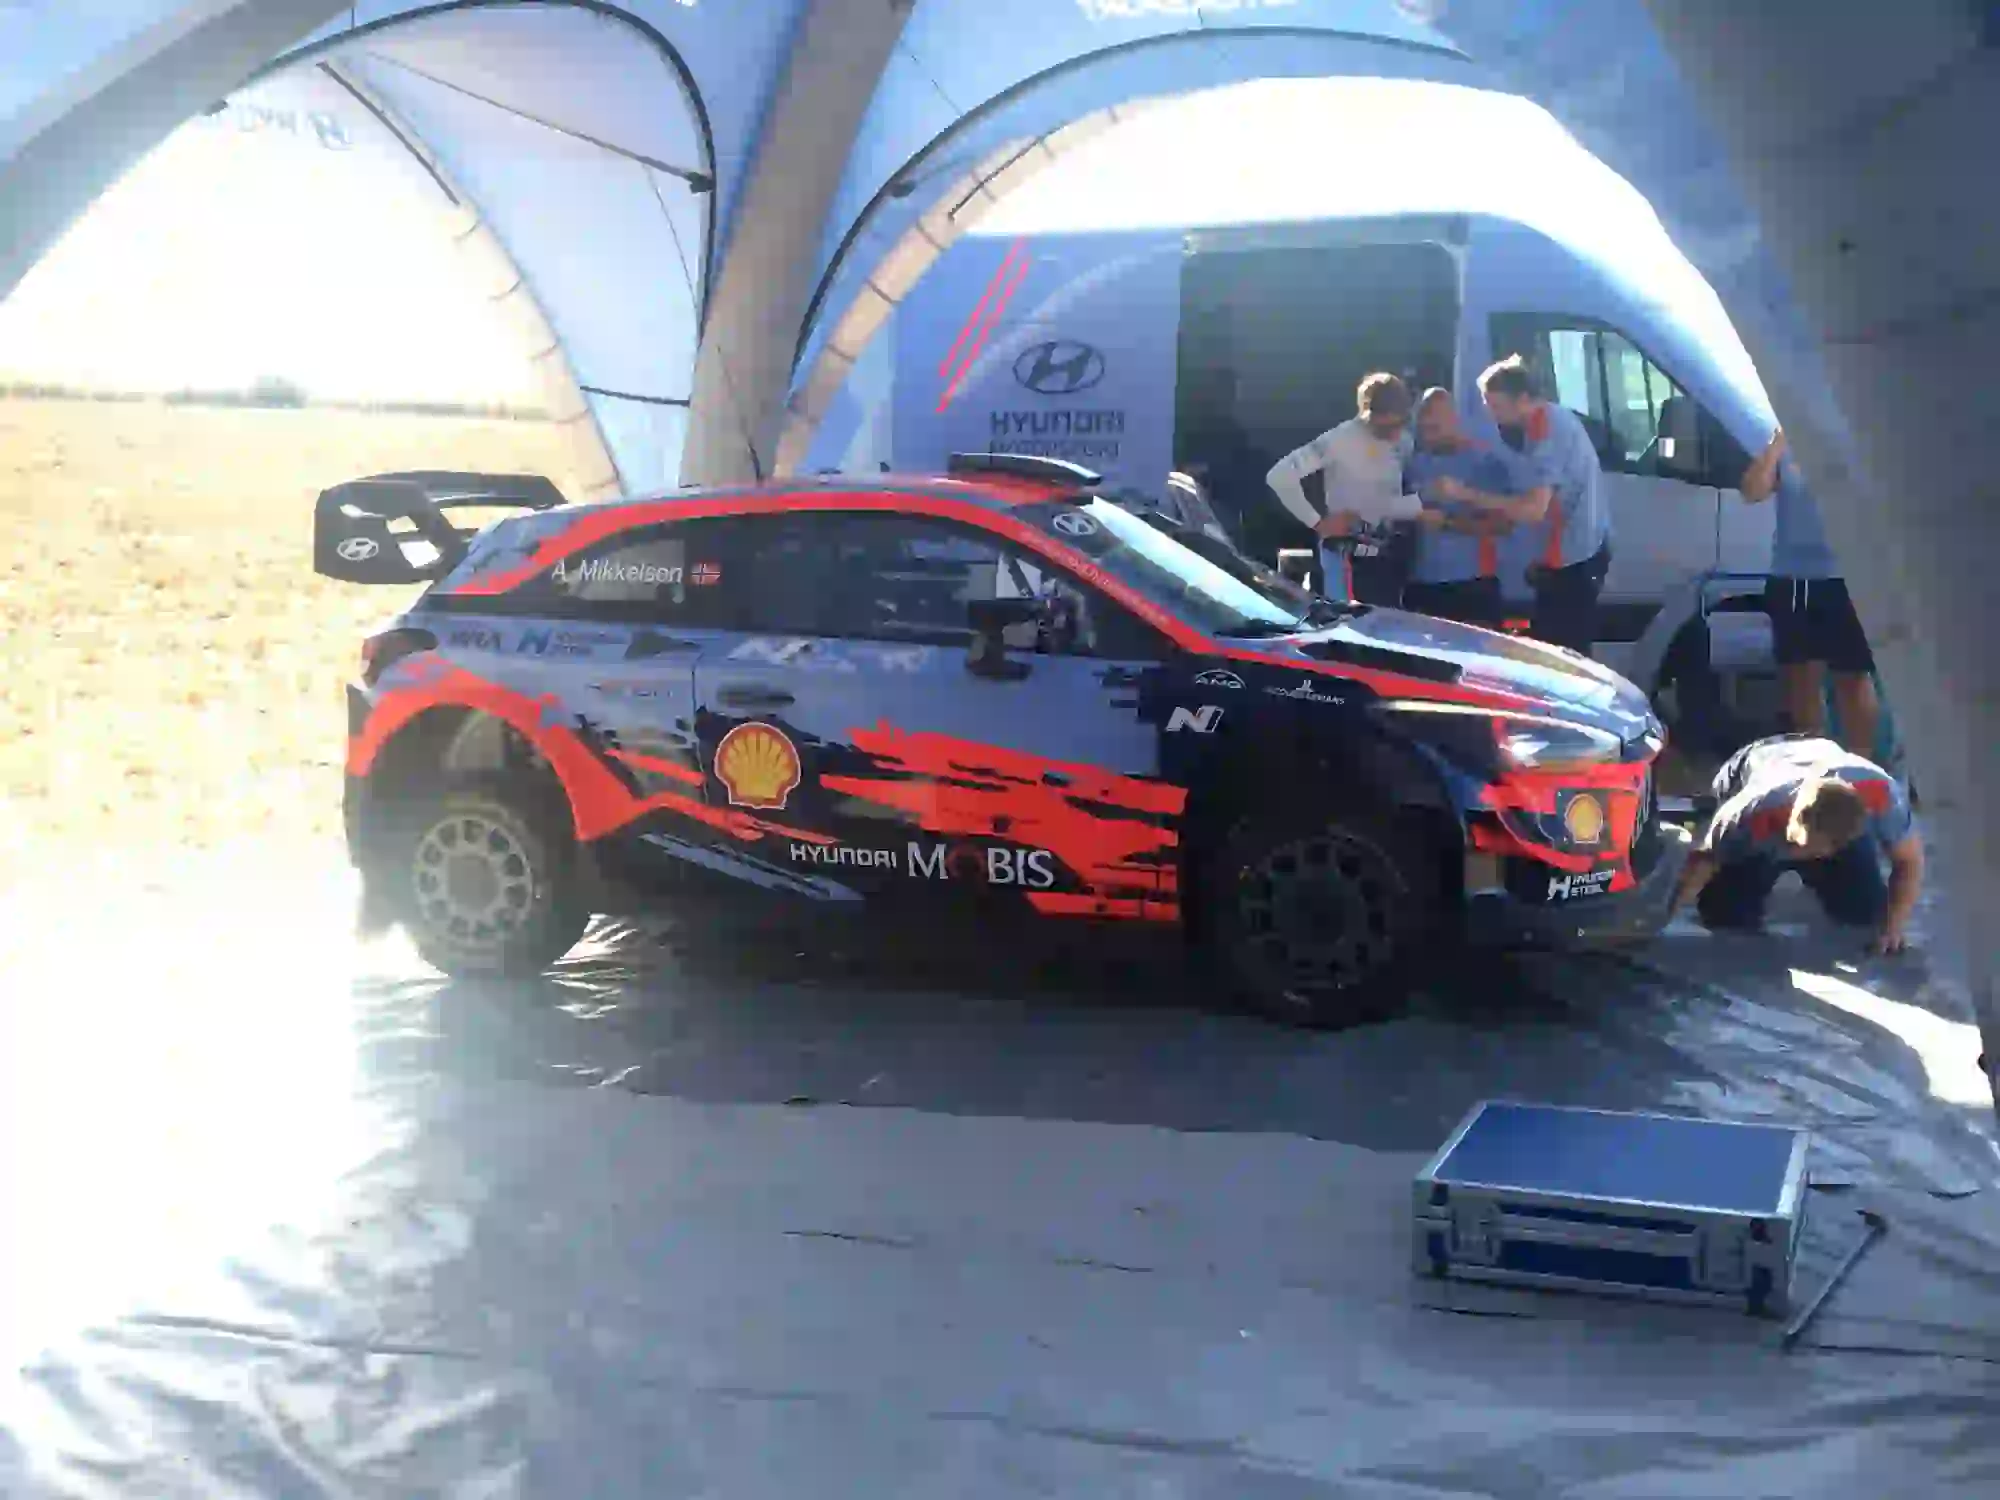 Rally Italia Sardegna - Hyundai Co-Drive Experience 2019 - 6